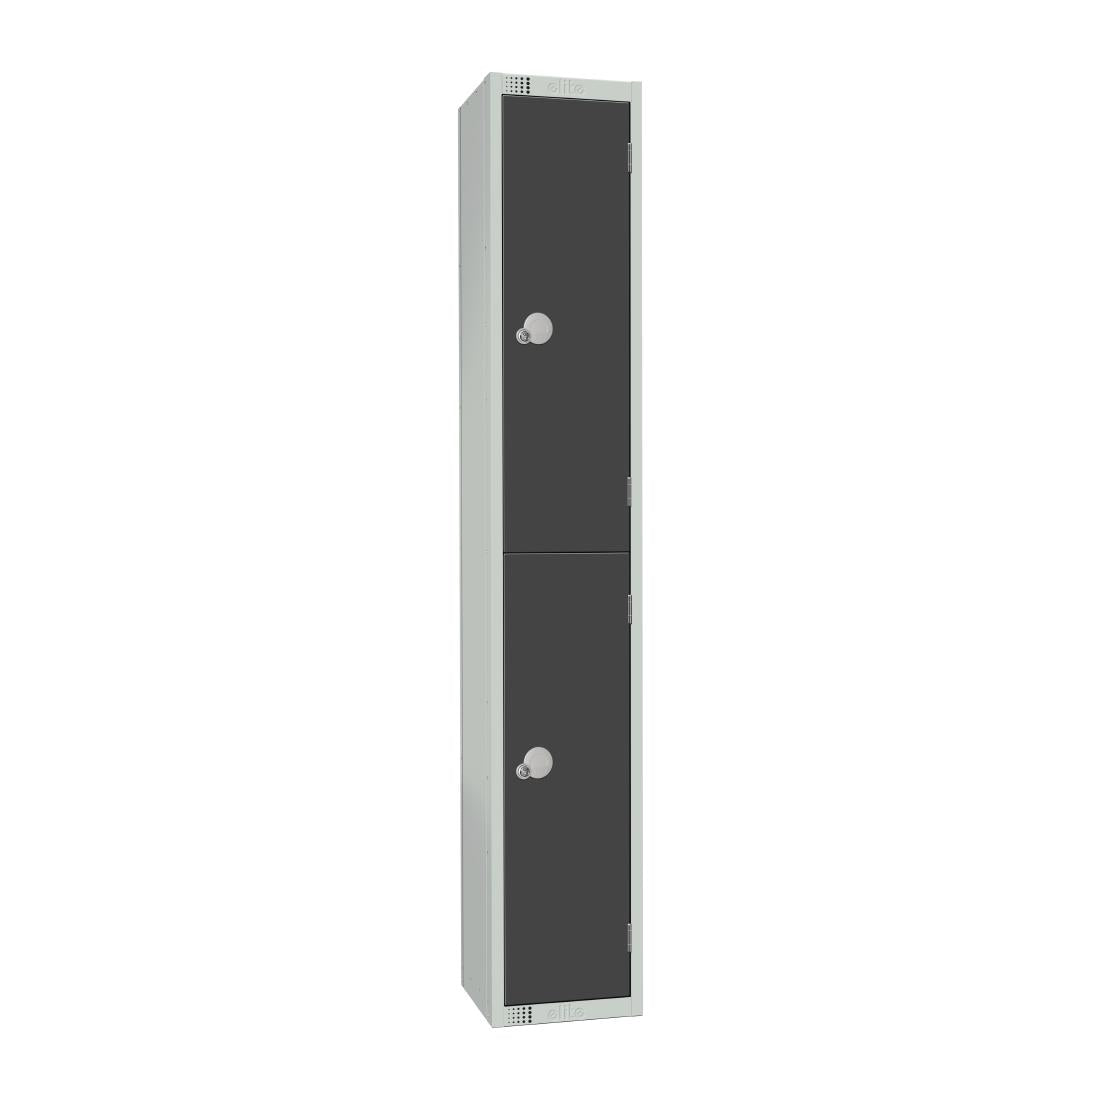 GR678-EL Elite Double Door Electronic Combination Locker Graphite Grey JD Catering Equipment Solutions Ltd